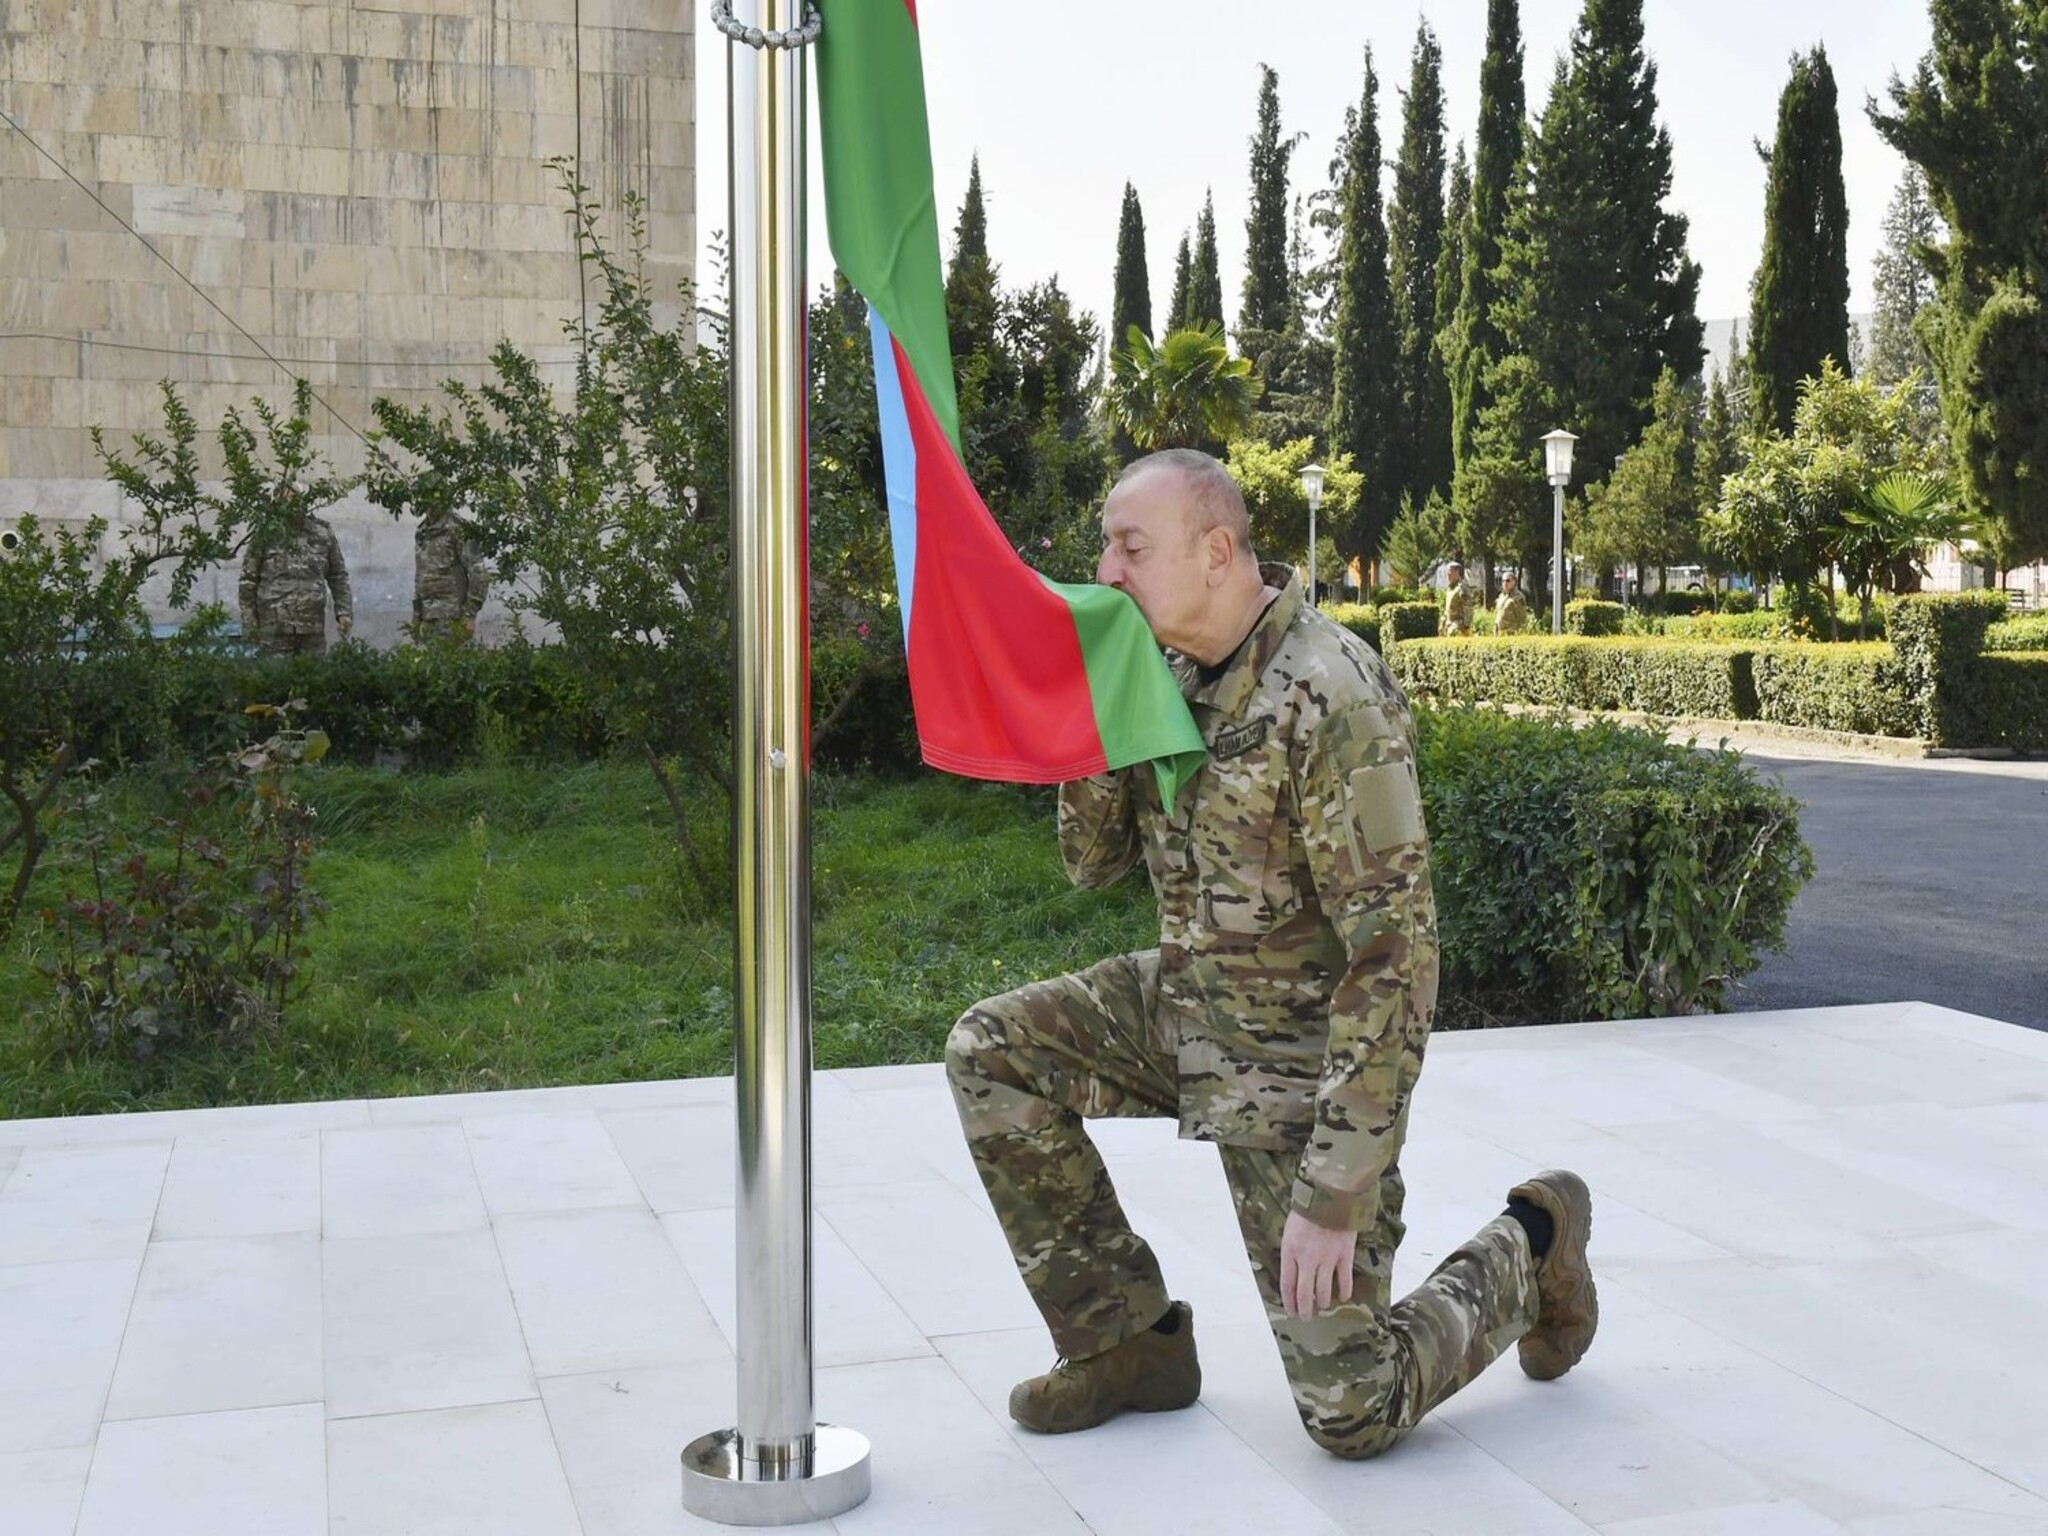 الرئيس الأذربيجاني يرفع علم بلده في عاصمة ناغورنو كاراباخ